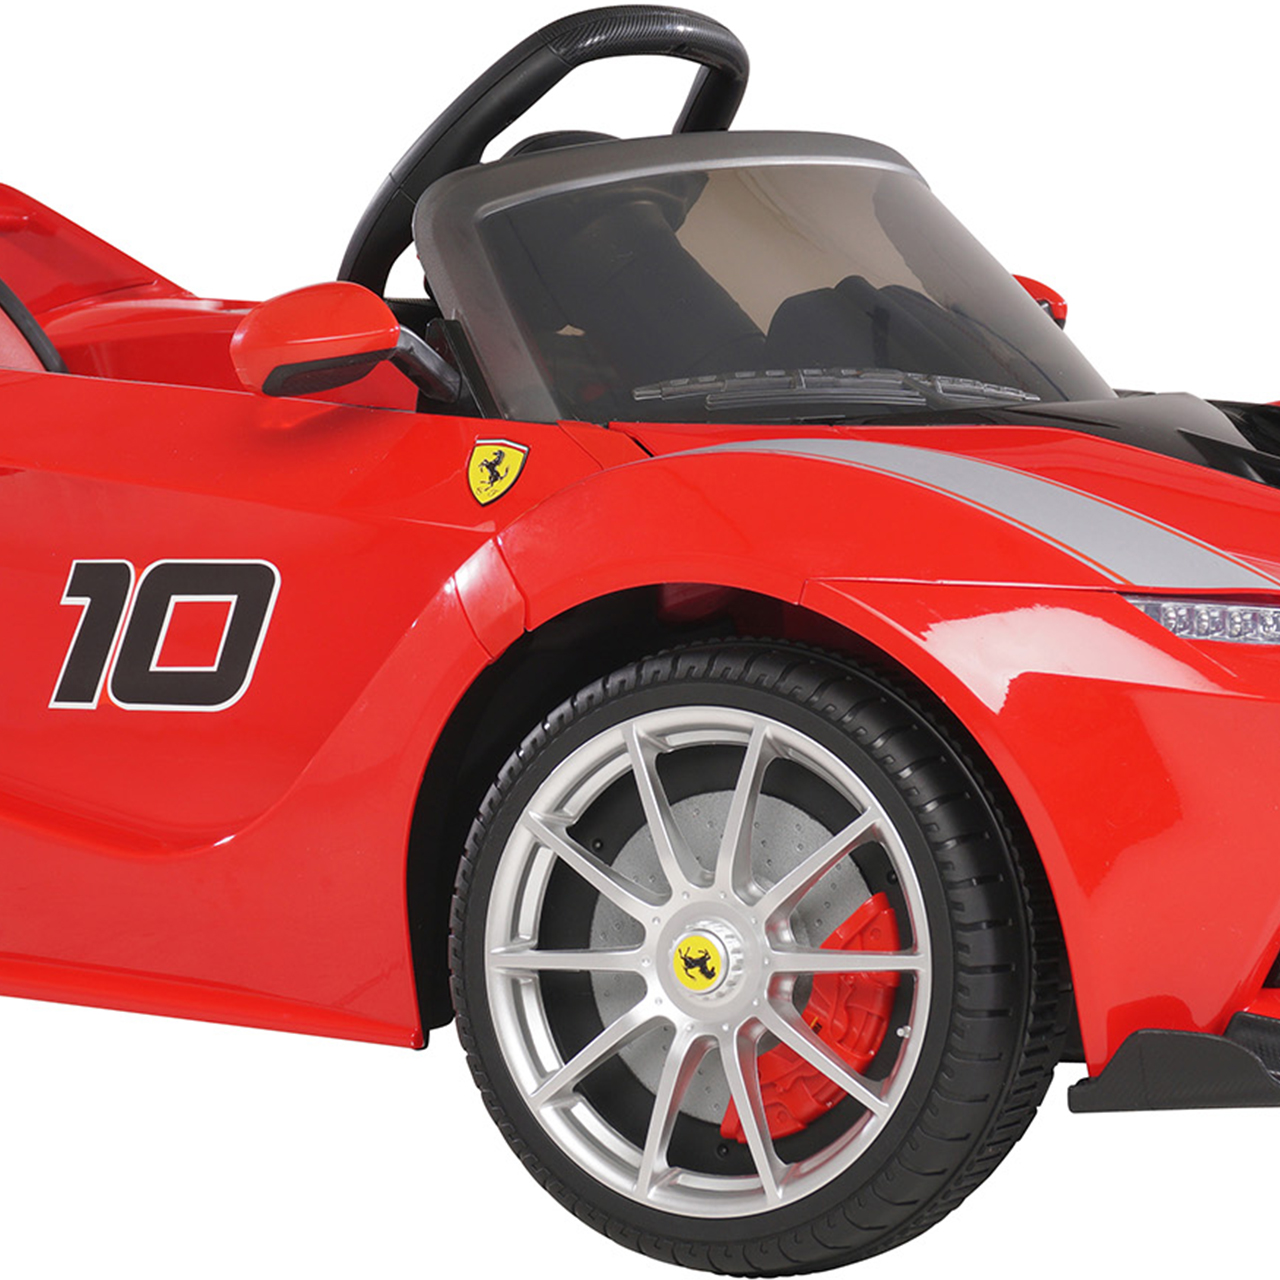 Ferrari La Ferrari